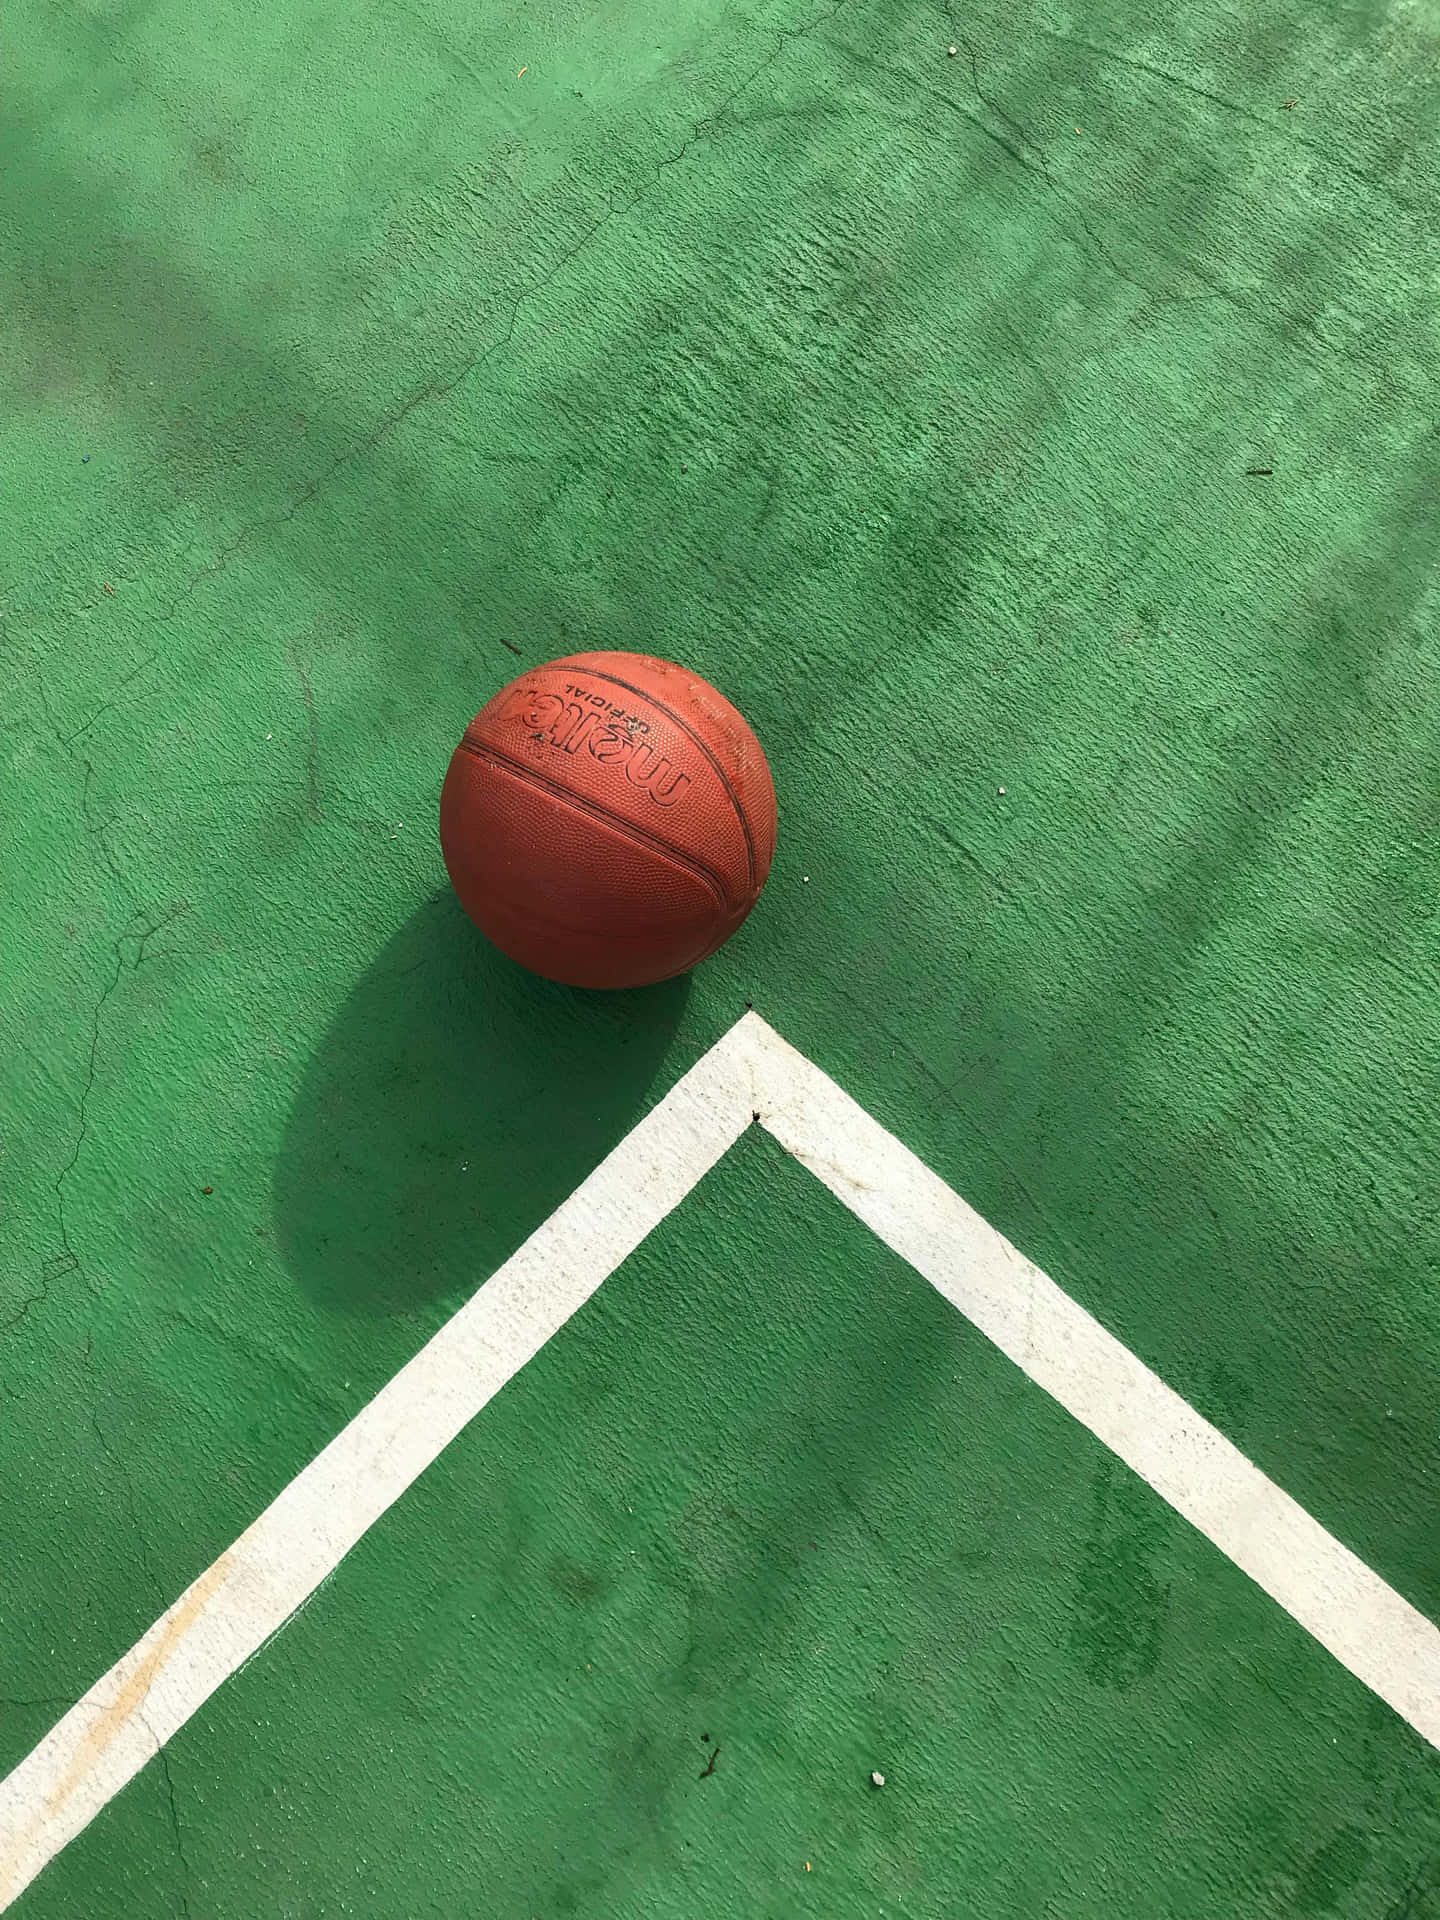 Basketballon Green Court.jpg Wallpaper